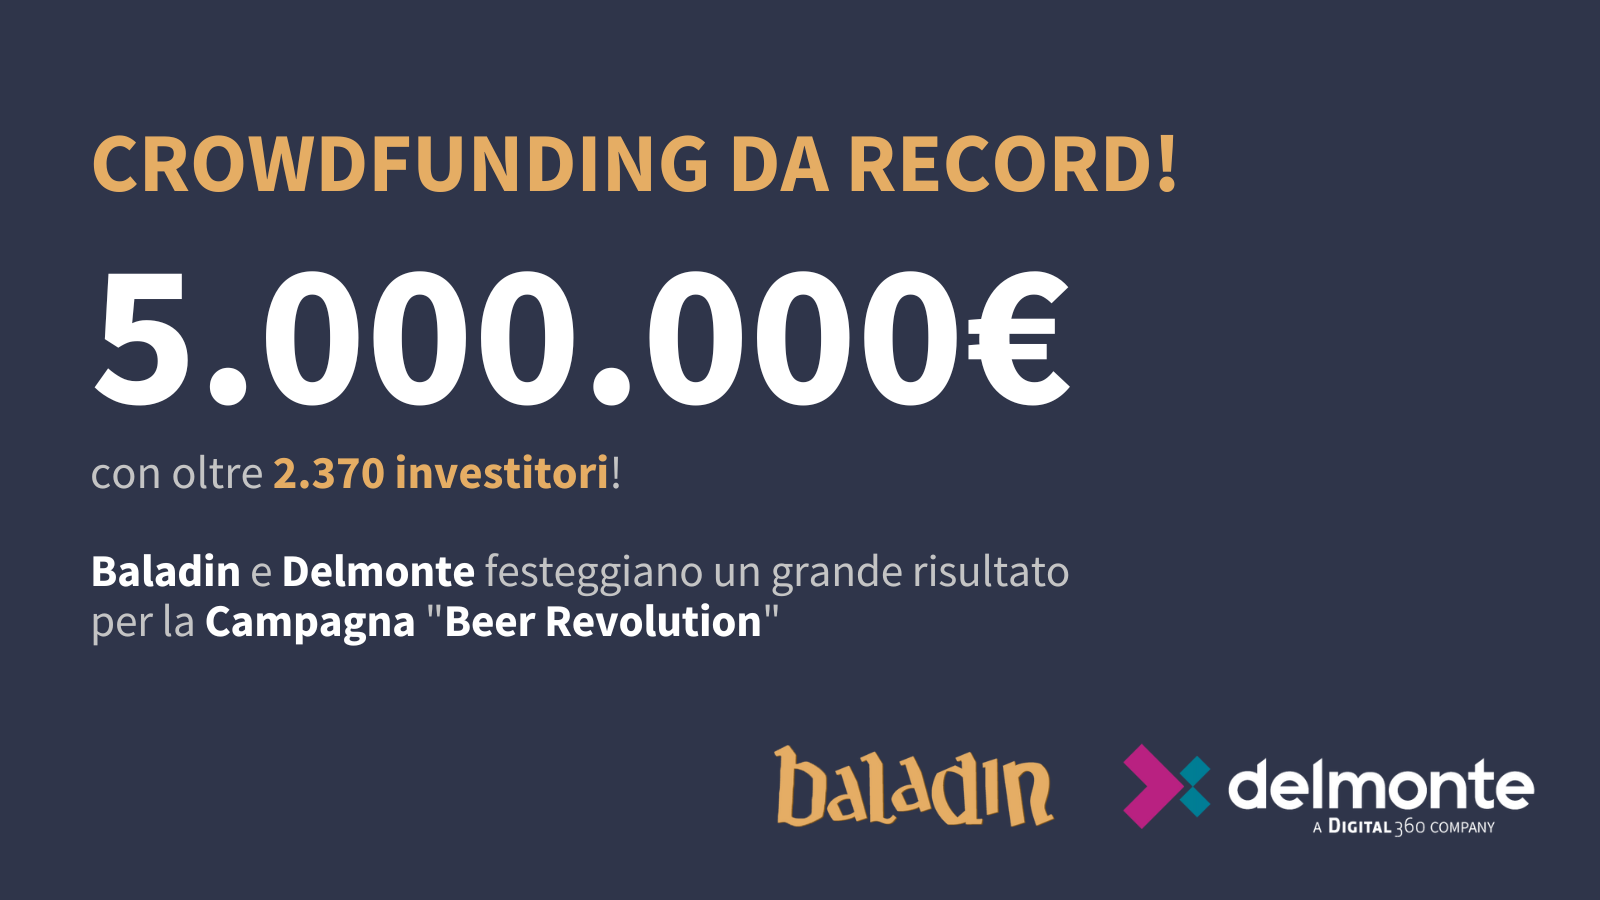 Grande successo per la campagna "Beer Revolution" di Baladin: crowdfunding da record!